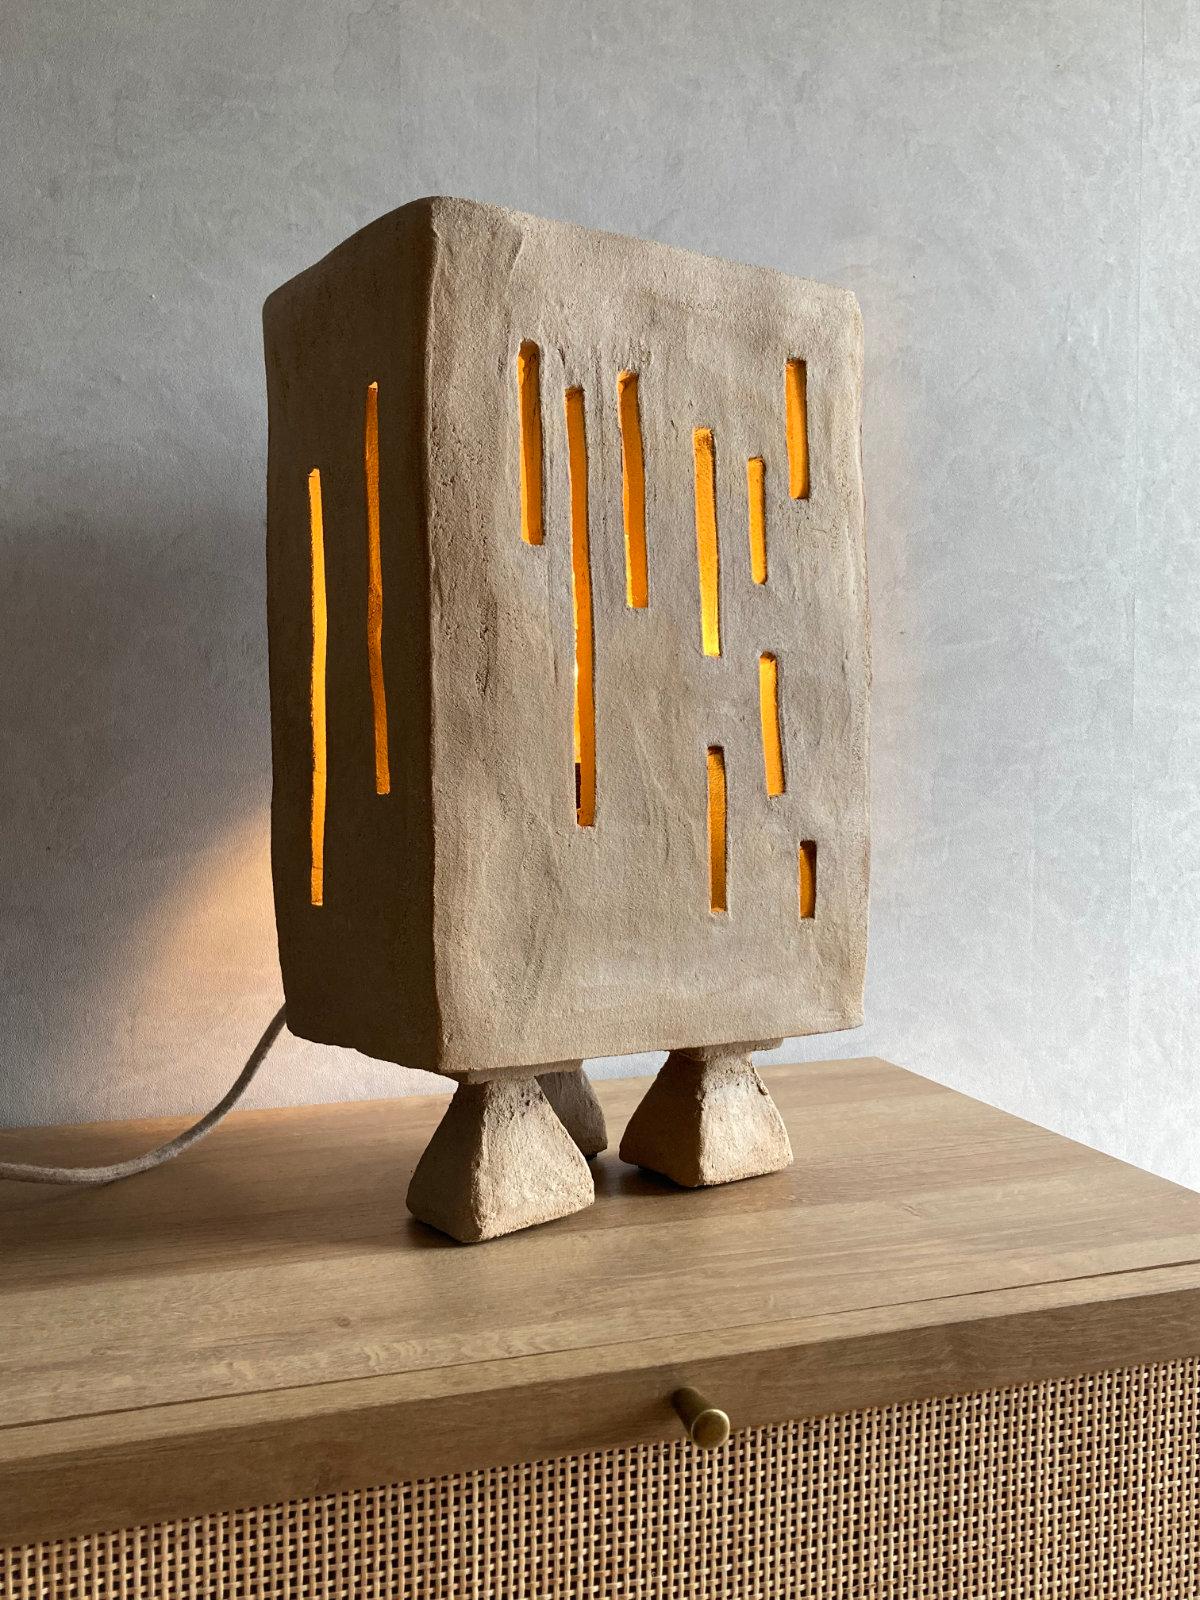 Lampe de table Artefact de Lea Munsch
Dimensions : L 28 x P 16 x H 49 cm
Matériaux : Grès cérame

Numéroté sur /20. Chaque pièce est unique, avec sa propre personnalité et ses propres marques. Il y a une ouverture à l'arrière pour y glisser une